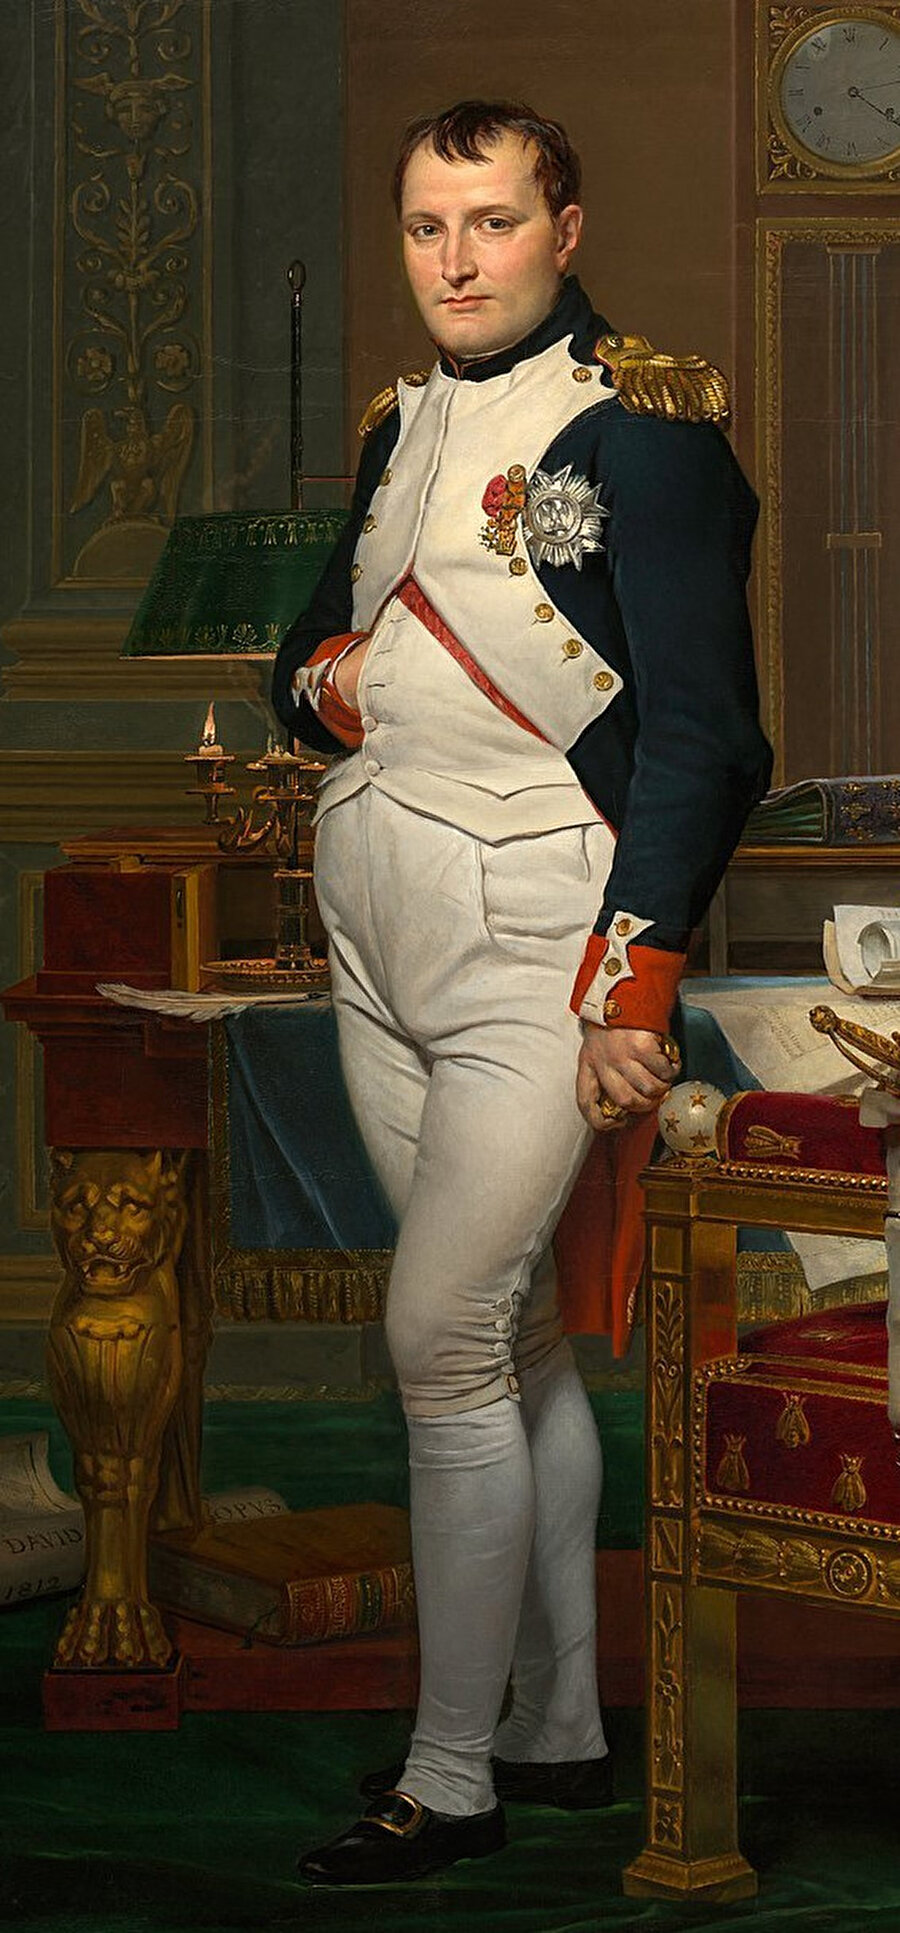  Napolyon Bonaparte, eau de Cologne’u çok sevmiş ve oldukça abartılı bir şekilde kullanmıştı. Ayda 50 şişe sipariş ediyor ve yıkandıktan sonra omuzlarına ve boynuna sürüyordu